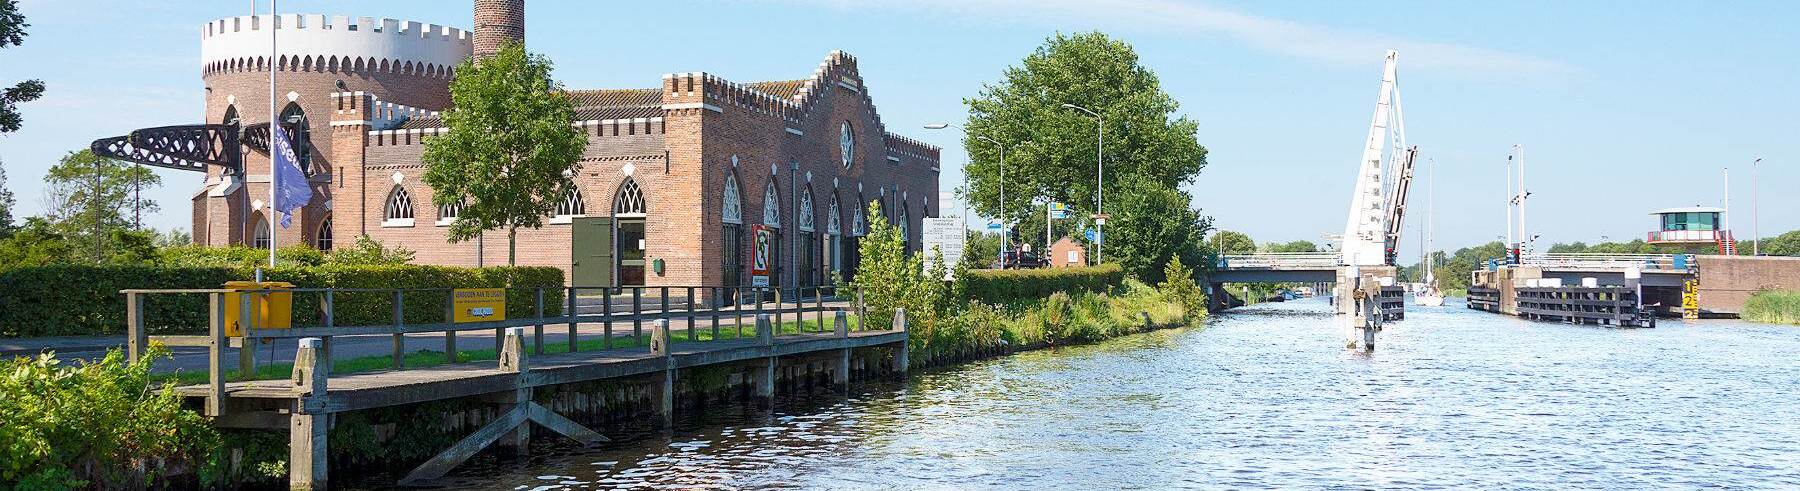 Welzorg Woning op Maat Haarlemmermeer